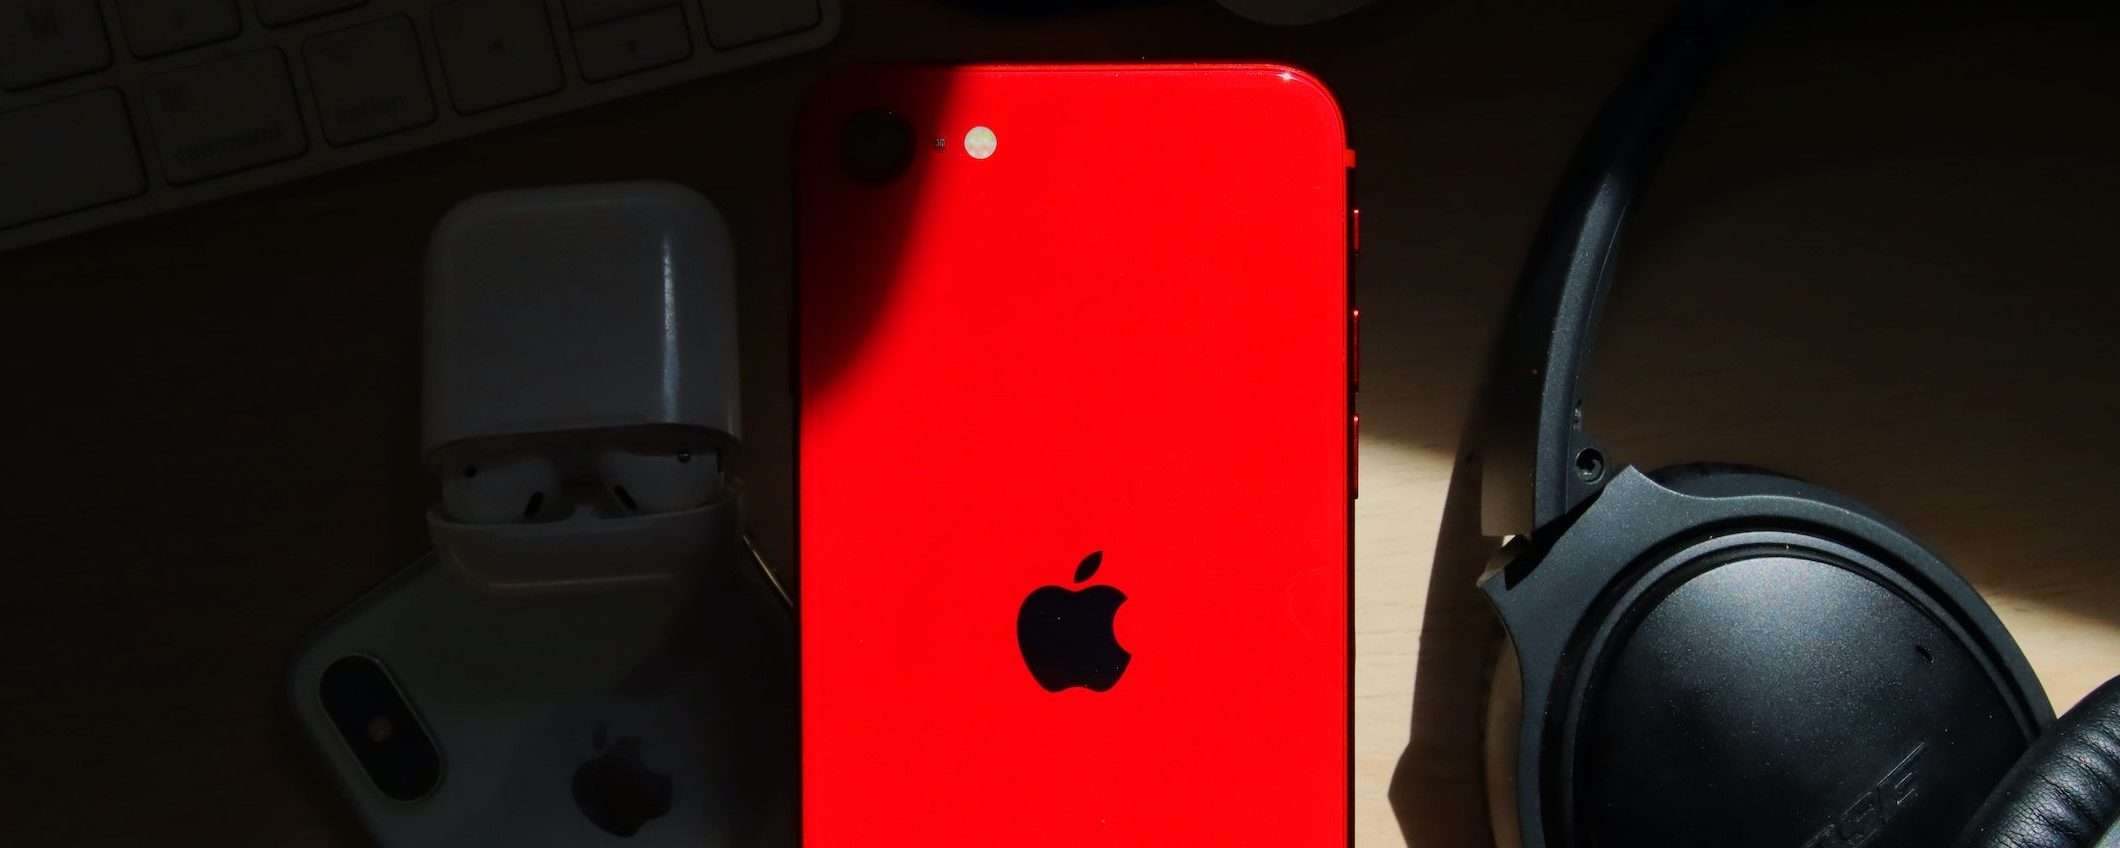 iPhone SE 4: Apple non ha ancora scelto il design